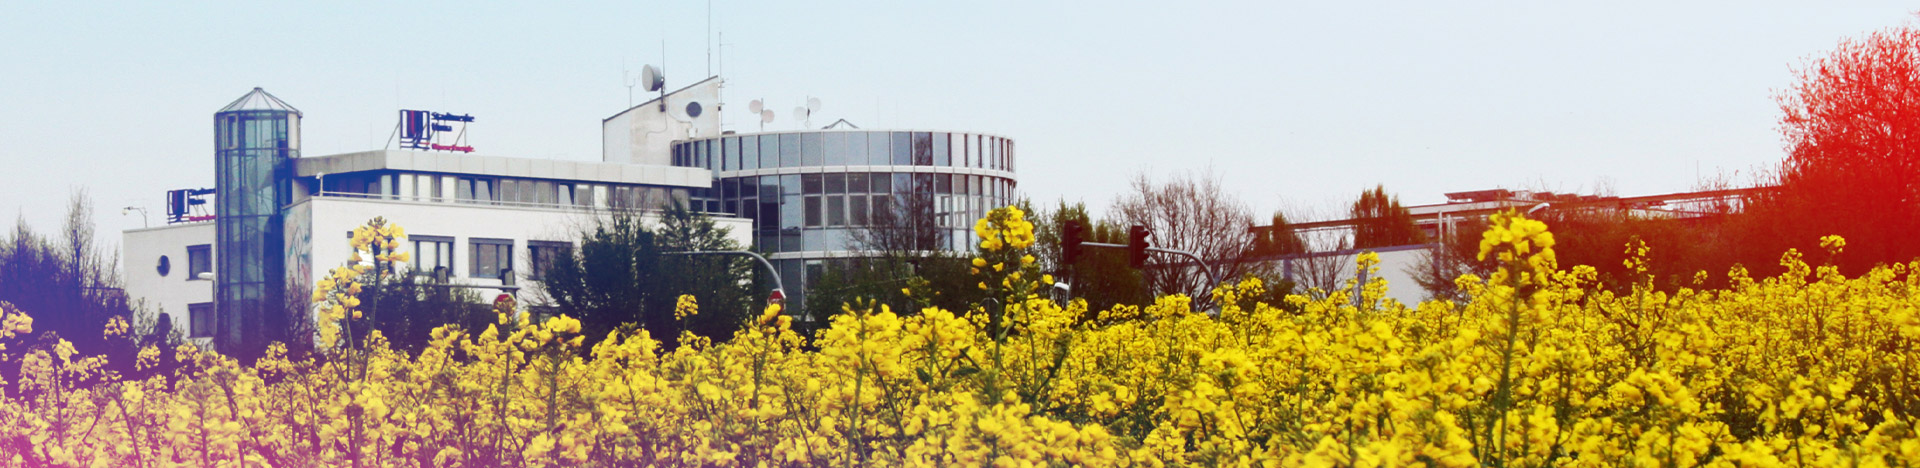 Verwaltungsgebäude der Stadtwerke Unna mit Rapsfeld im Vordergrund